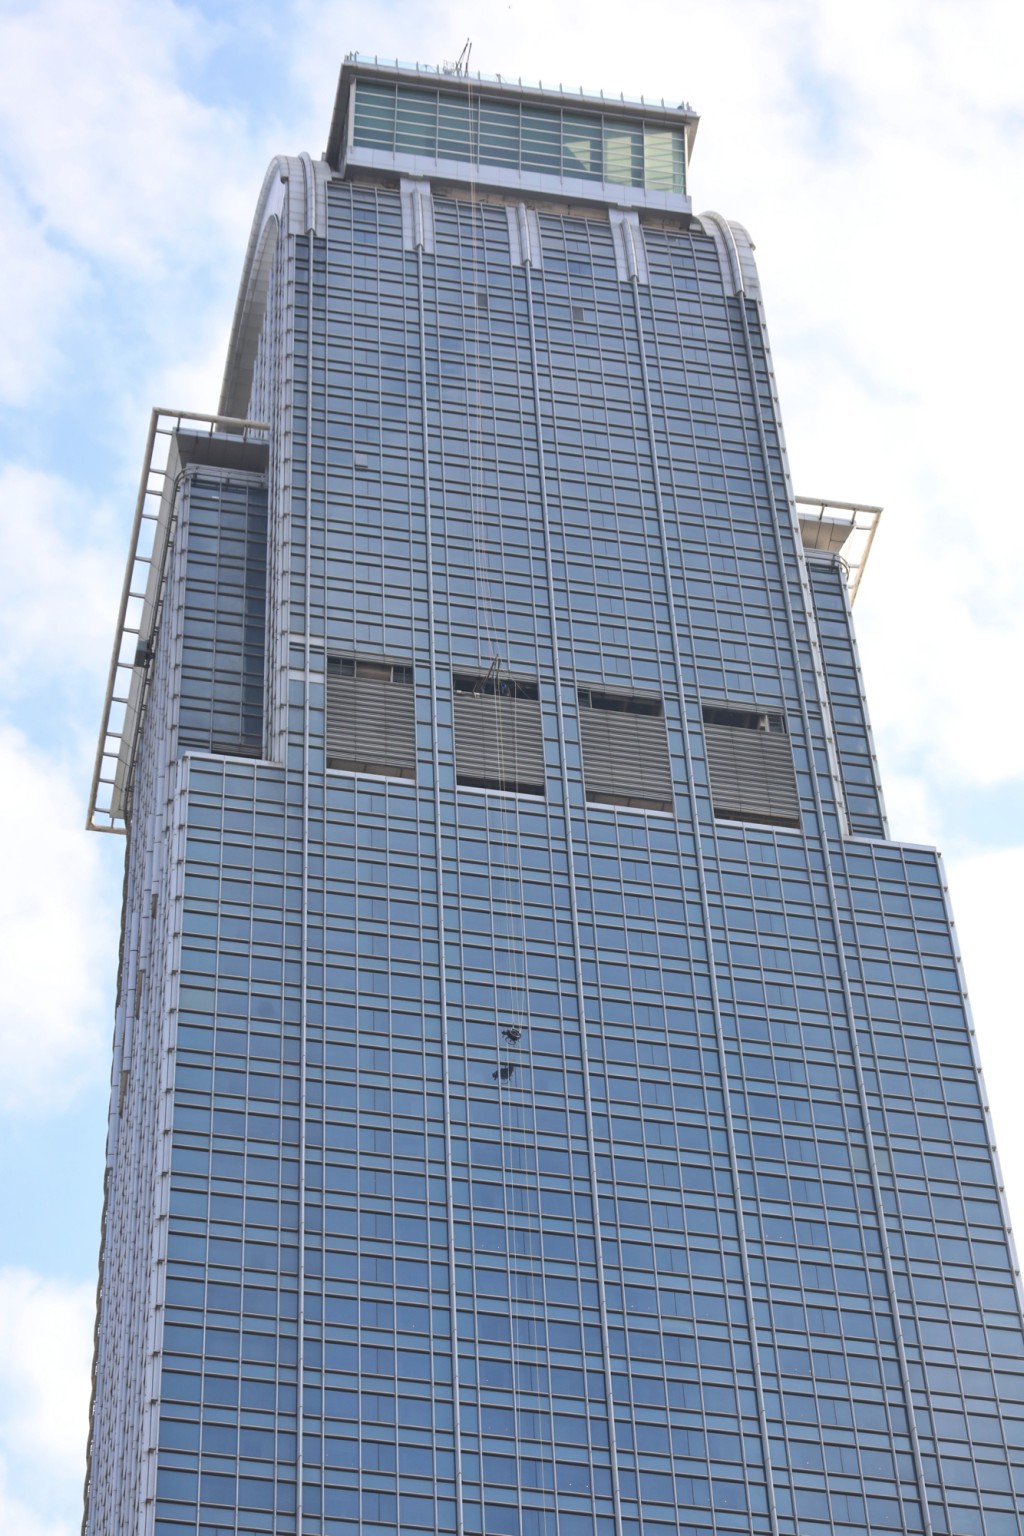 黎志伟挑战在轮椅上攀登高约320米的荃湾如心广场。资料图片